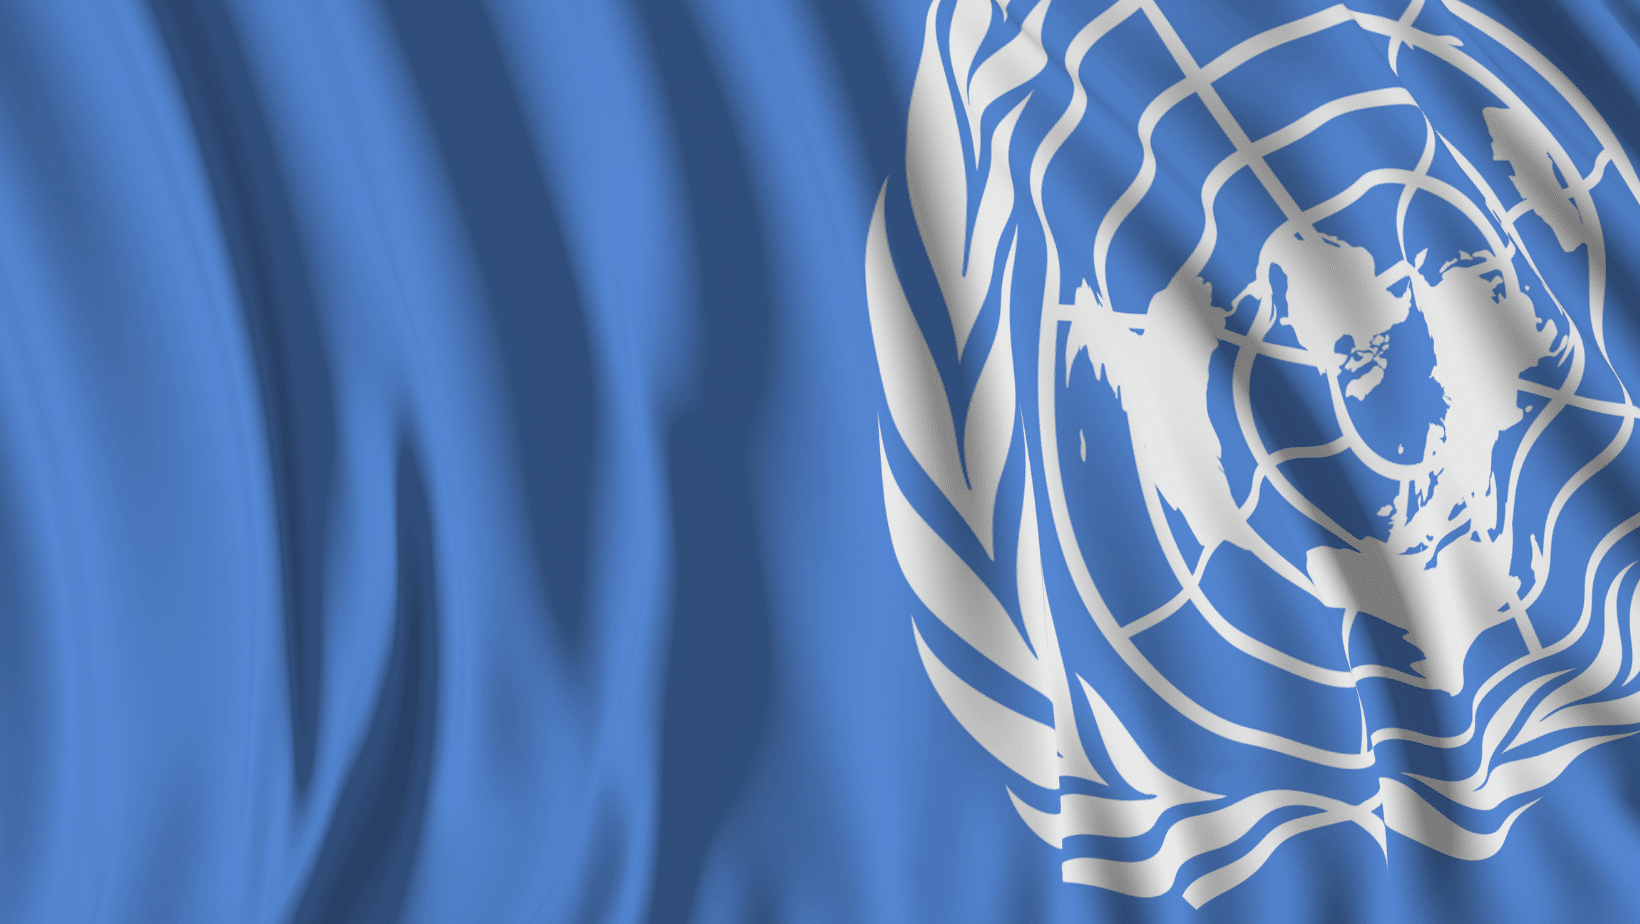 ONU: o que é a Organização das Nações Unidas?